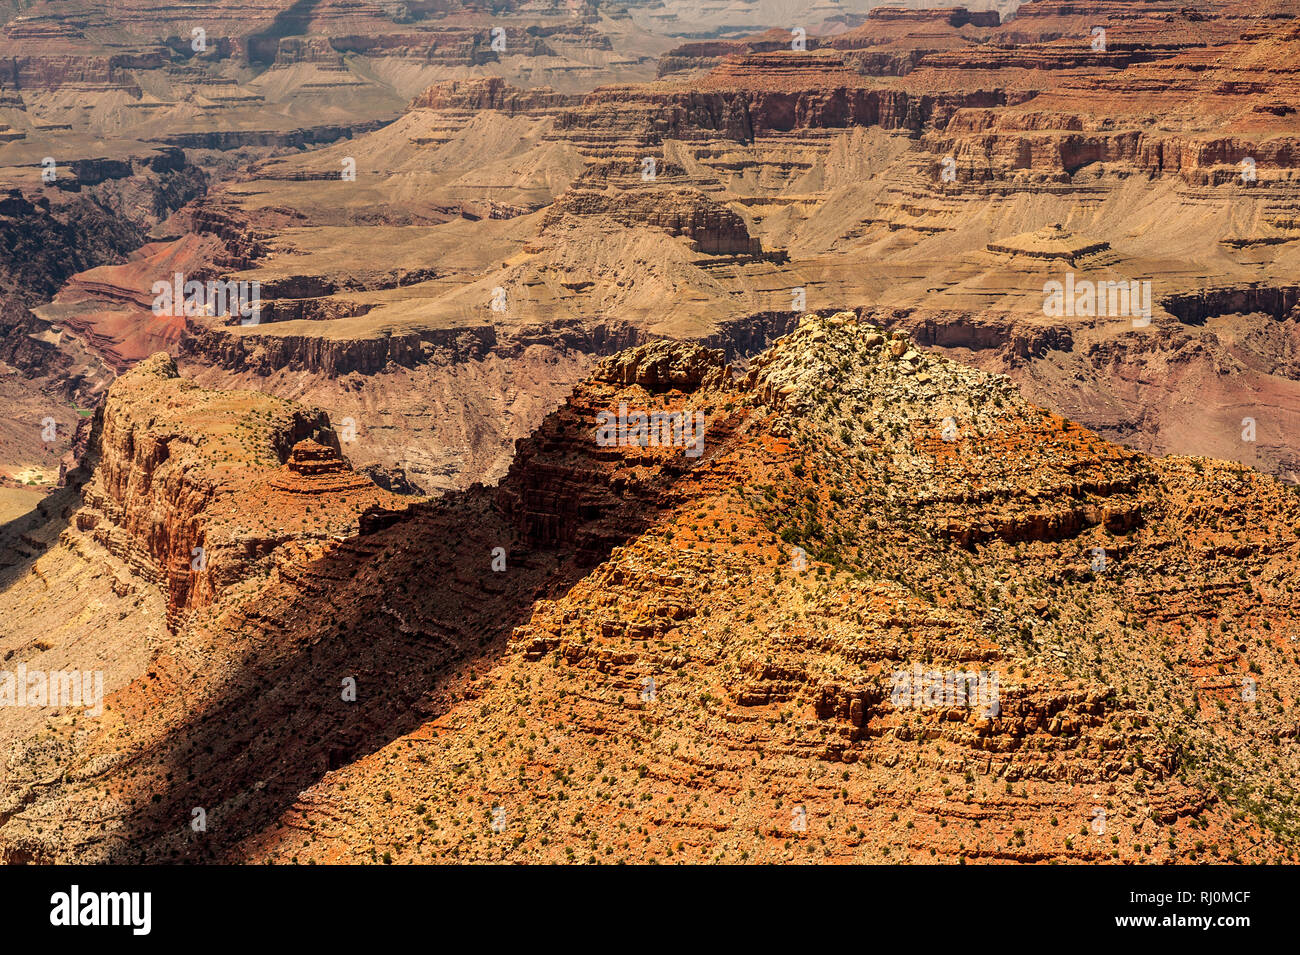 Felsformationen des Grand Canyon als vom South Rim, Arizona, Vereinigte Staaten von Amerika, Nordamerika gesehen Stockfoto